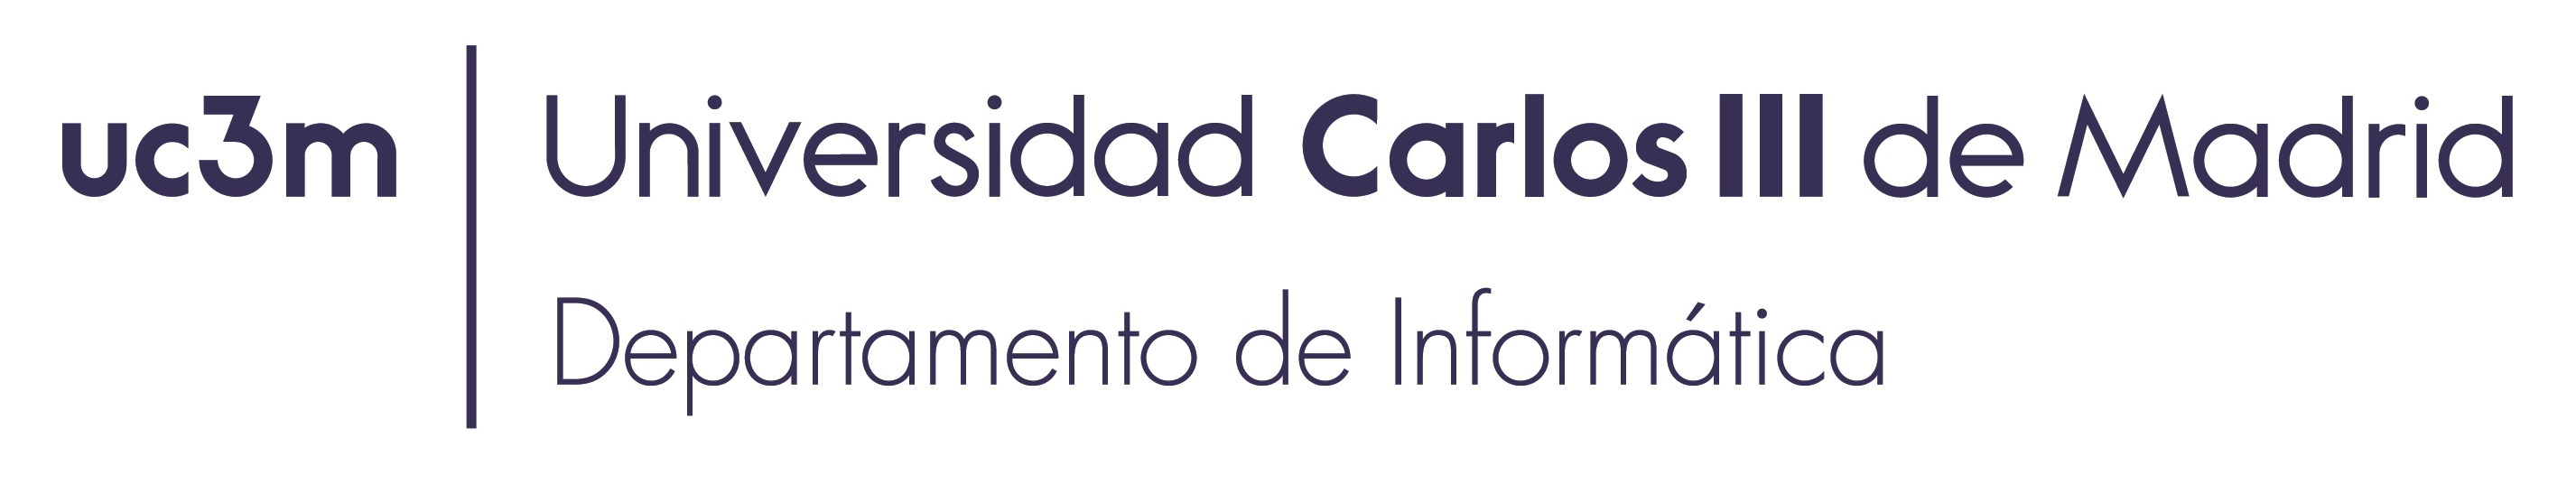 Departamento de Informática - Universidad Carlos III de Madrid